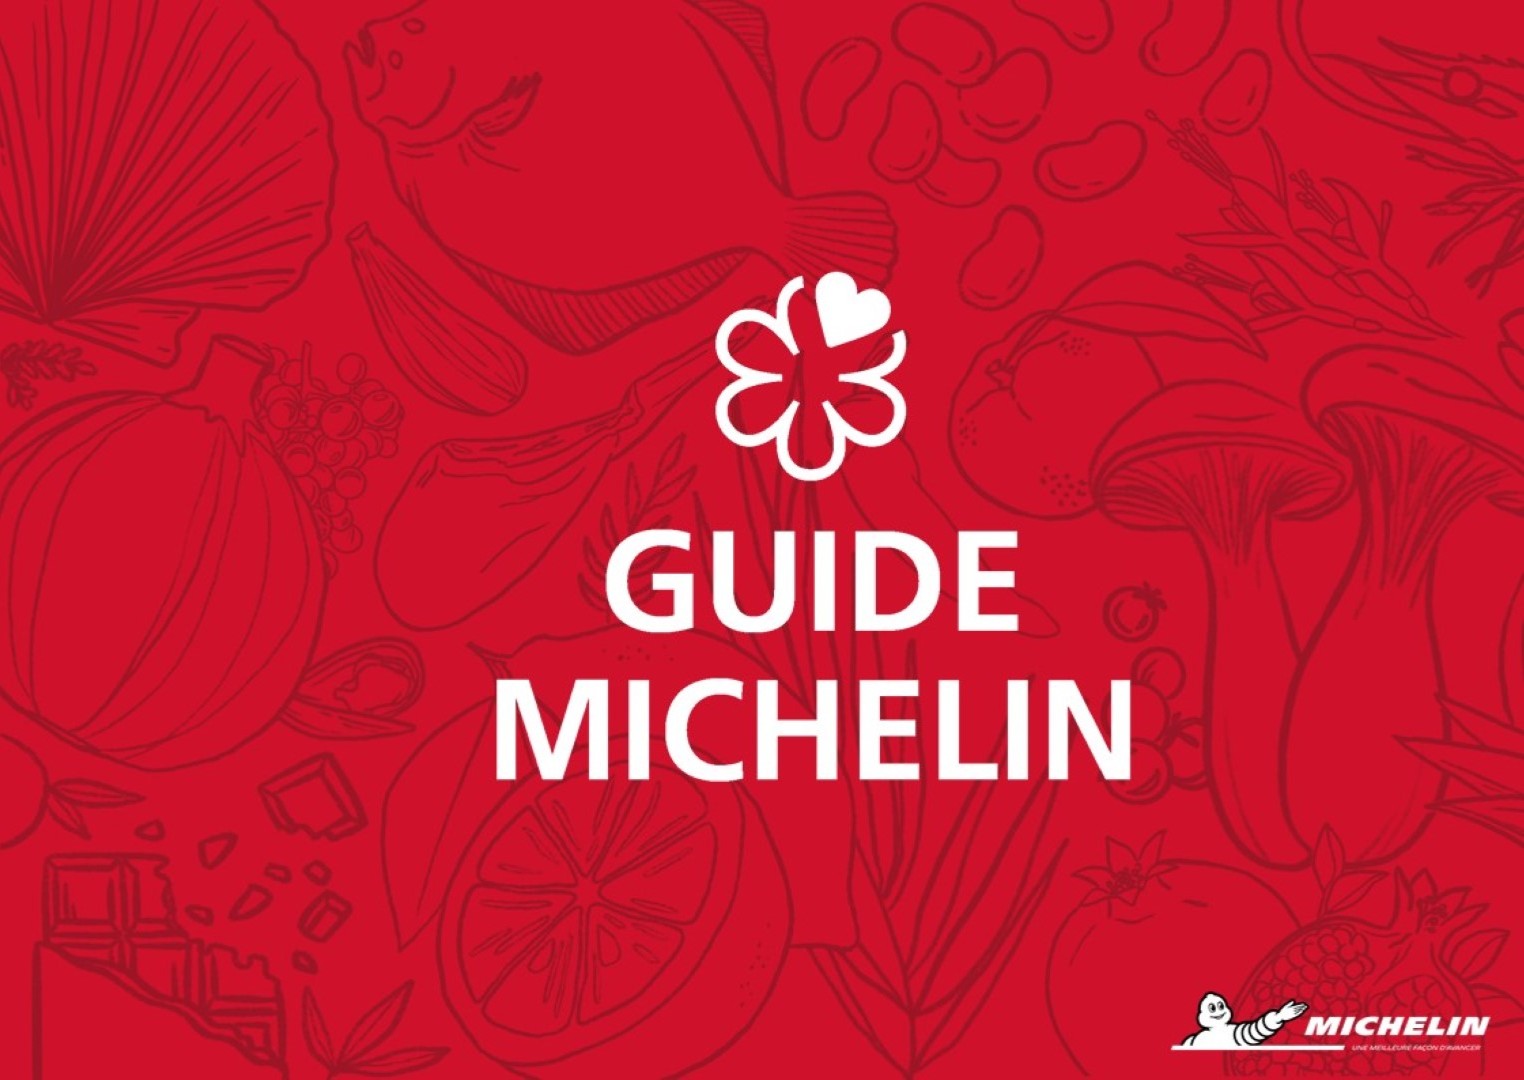 Michelin Sterren in Bourgondië (gastronomisch)